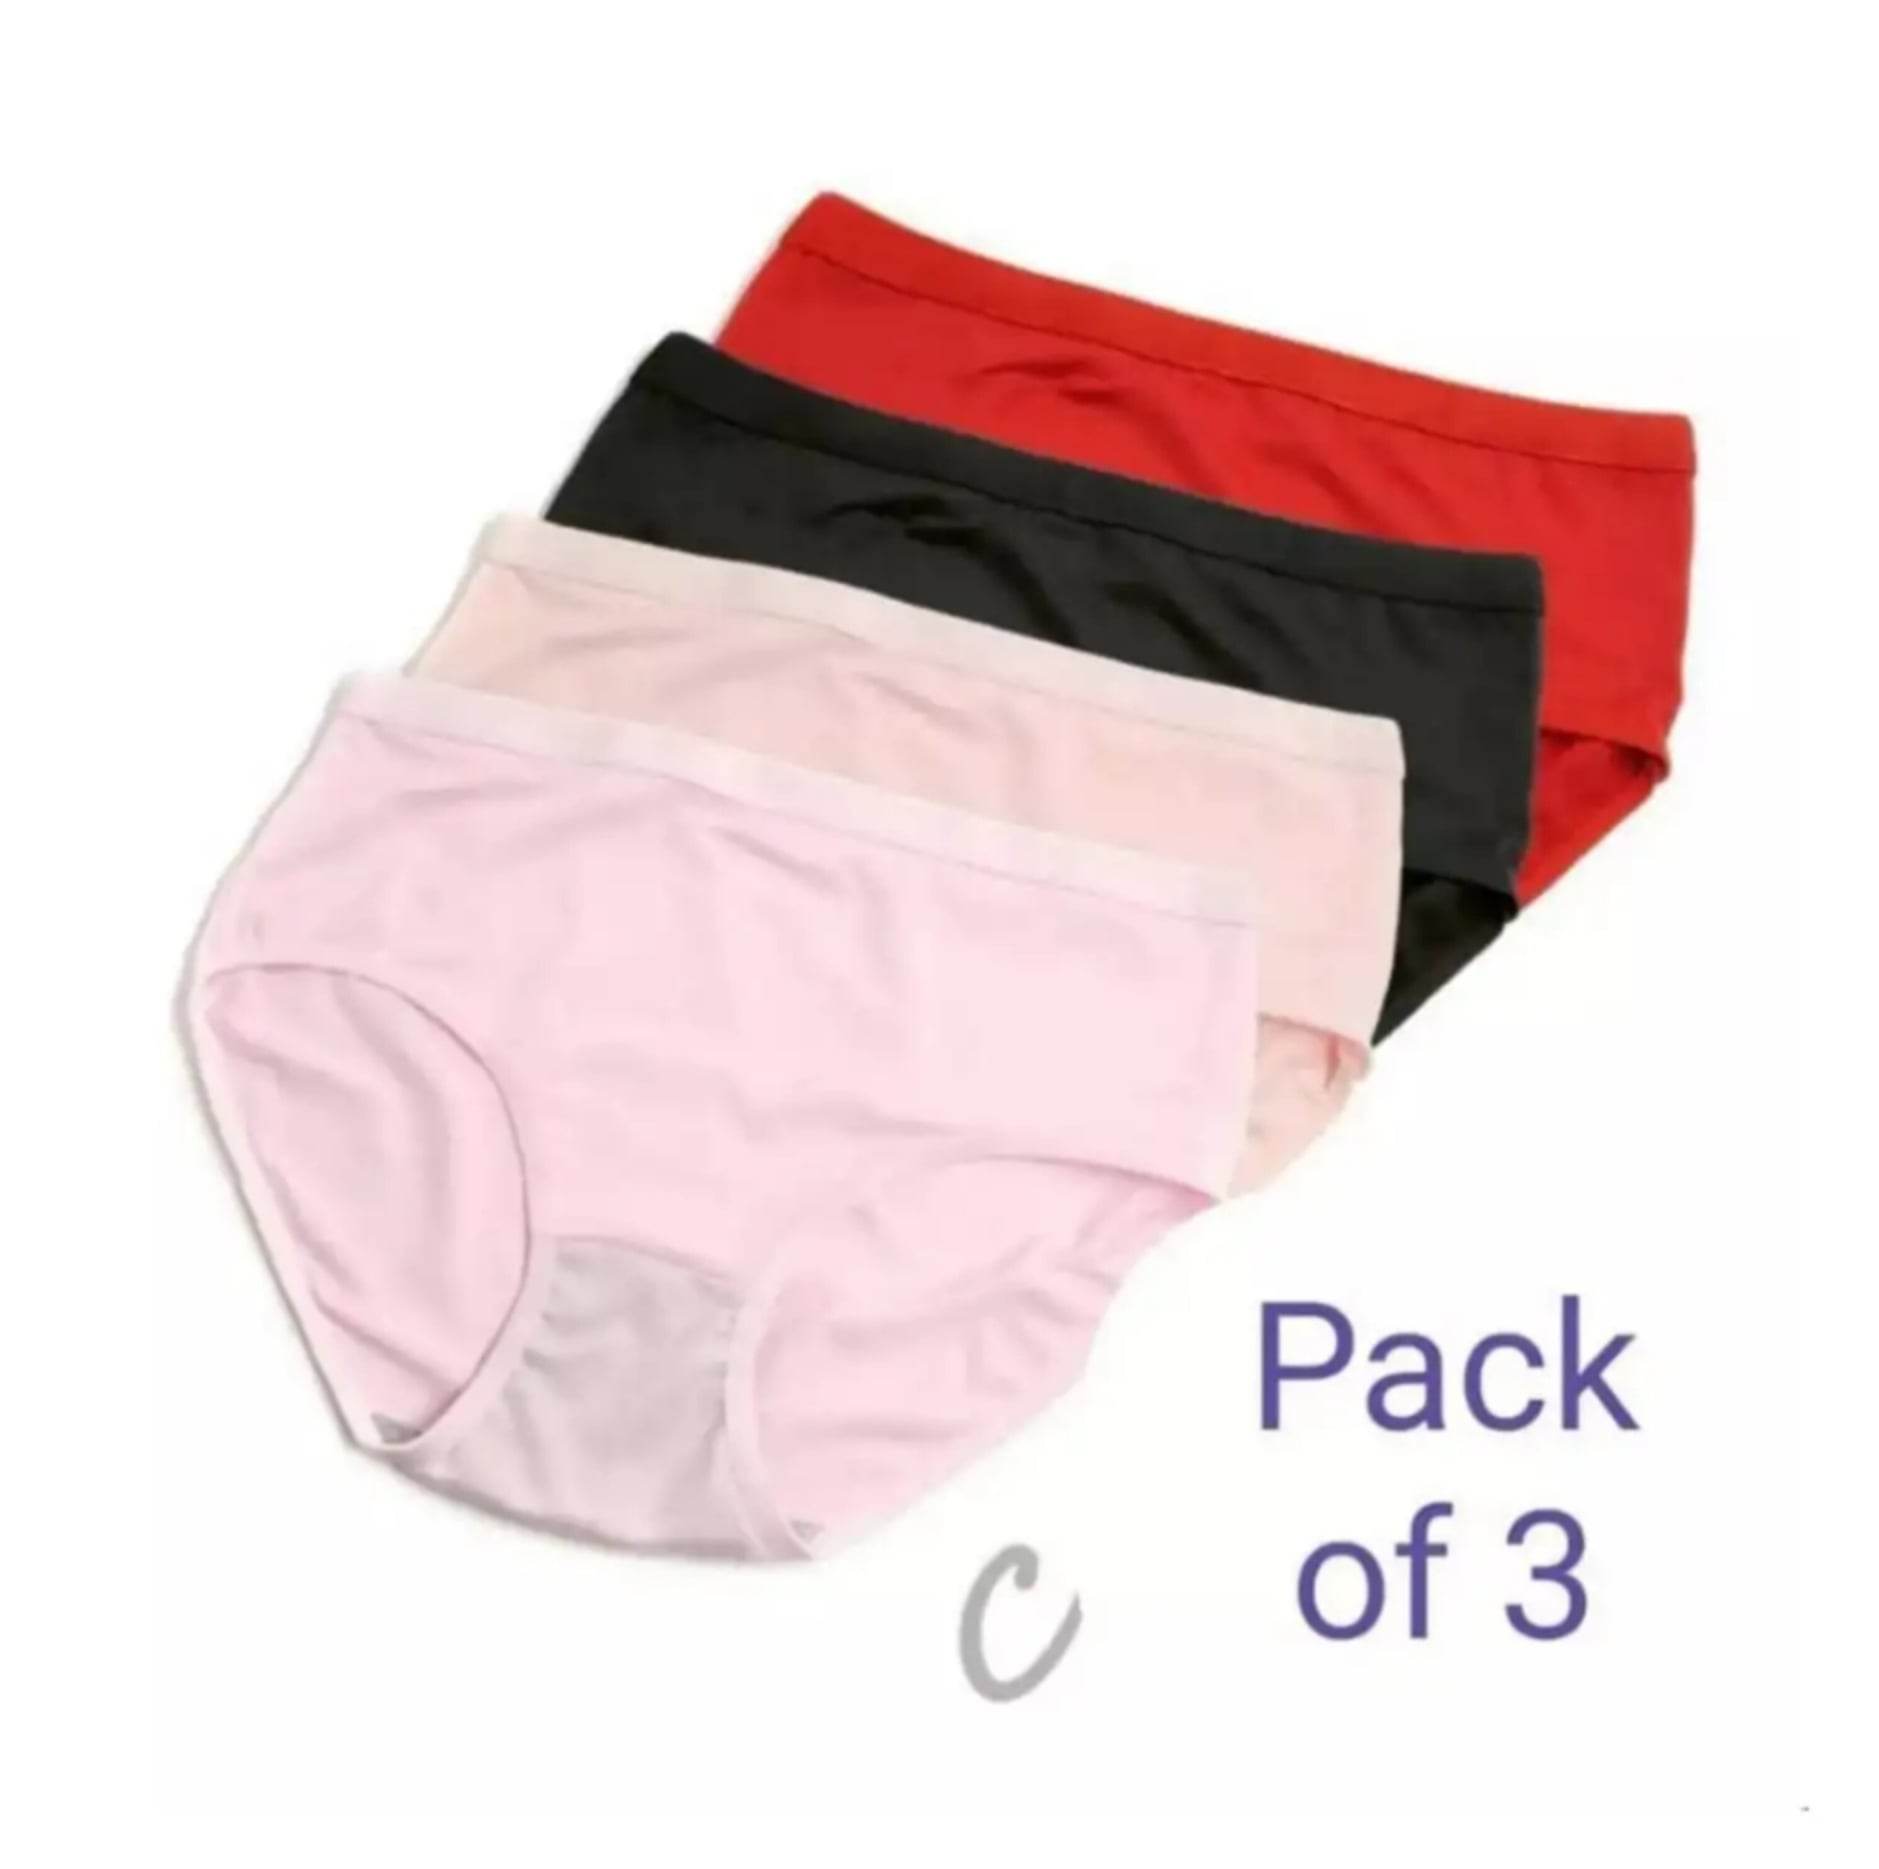 Imported soft cotton underwear for women/girls